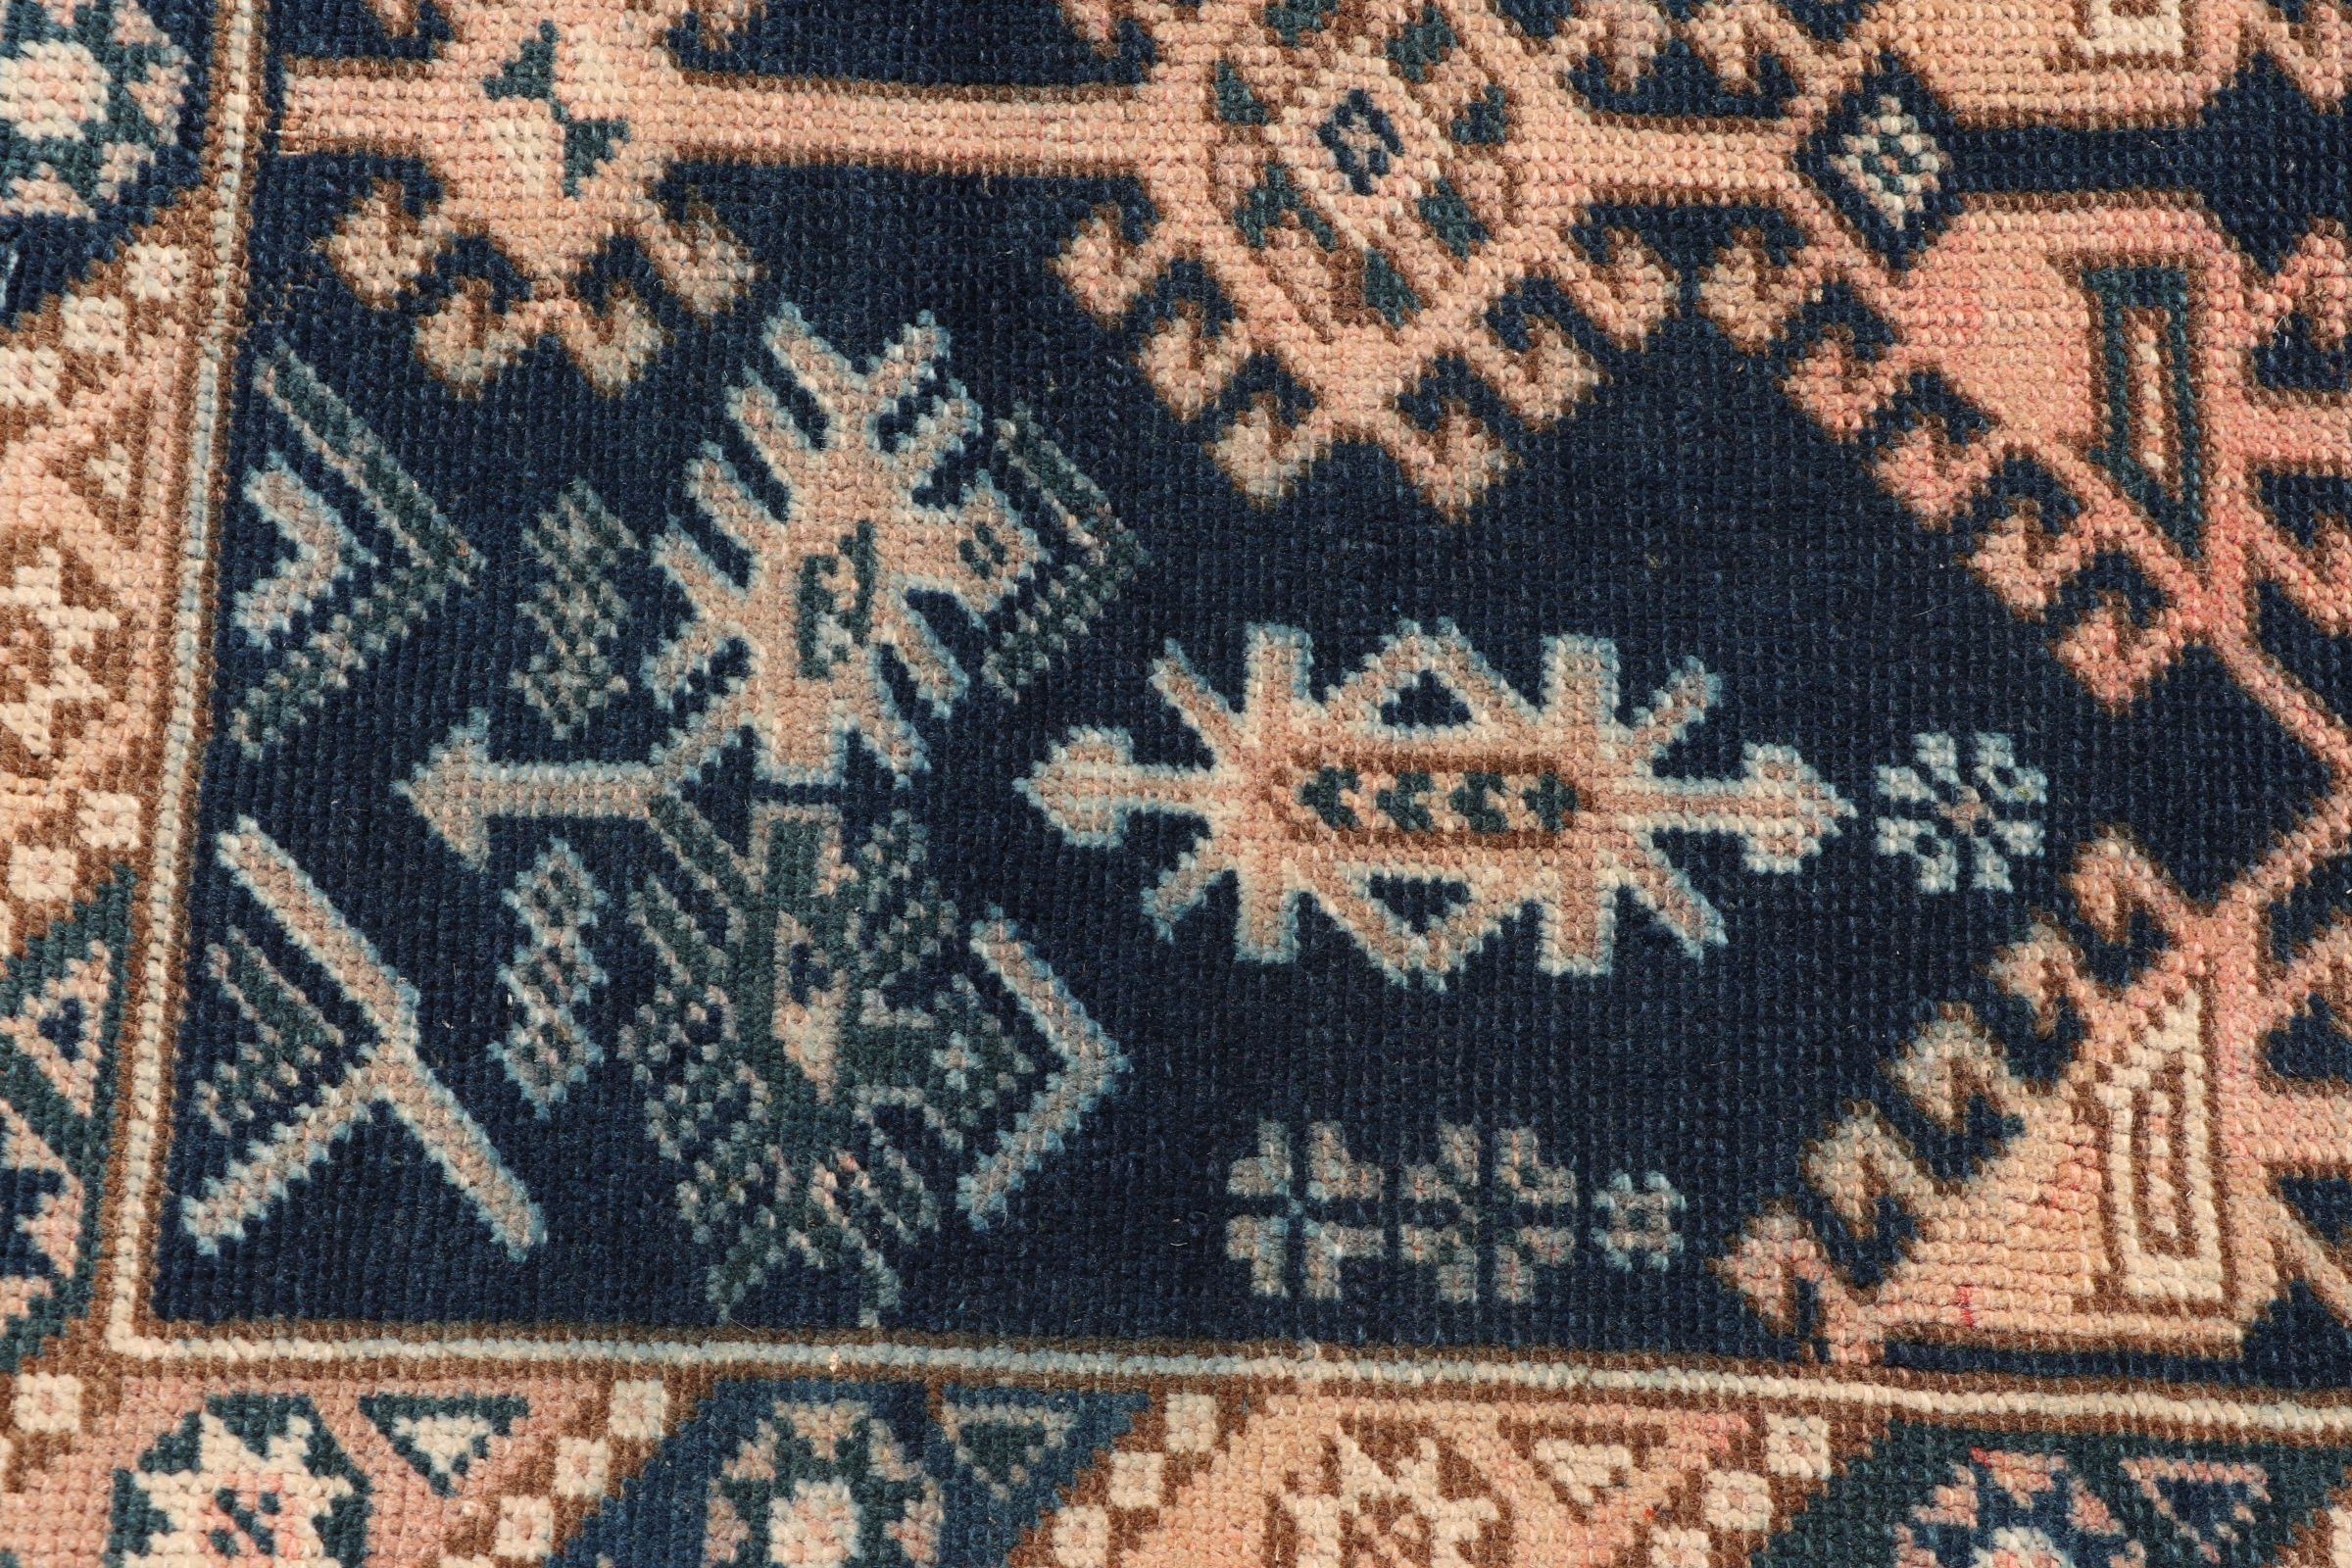 Moroccan Rug, Turkish Rug, Home Decor Rug, Rugs for Kitchen, Vintage Rug, Blue  3.9x6.3 ft Area Rug, Bedroom Rug, Custom Rug